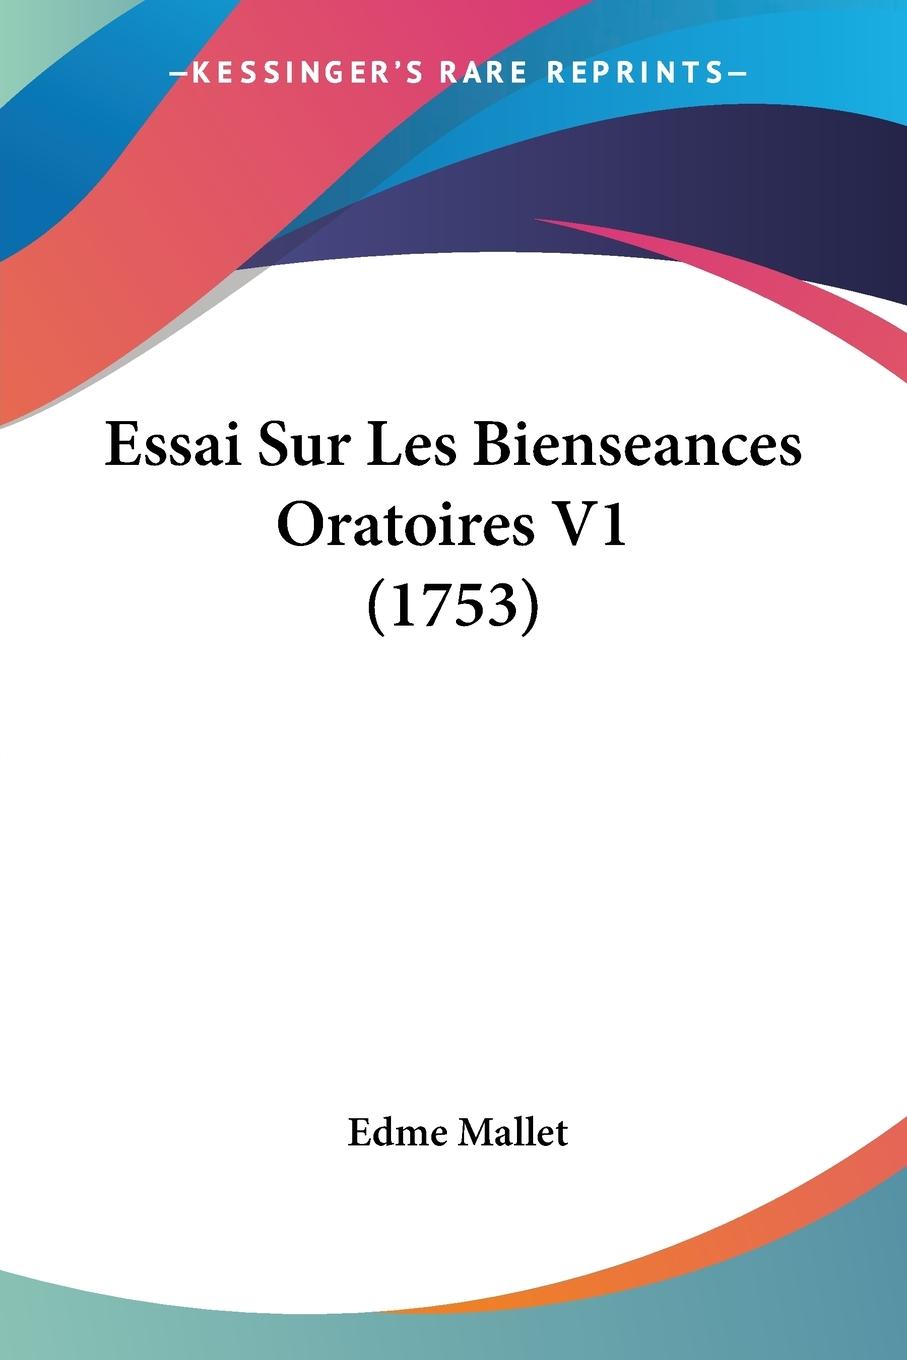 Essai Sur Les Bienseances Oratoires V1 (1753) - Mallet, Edme